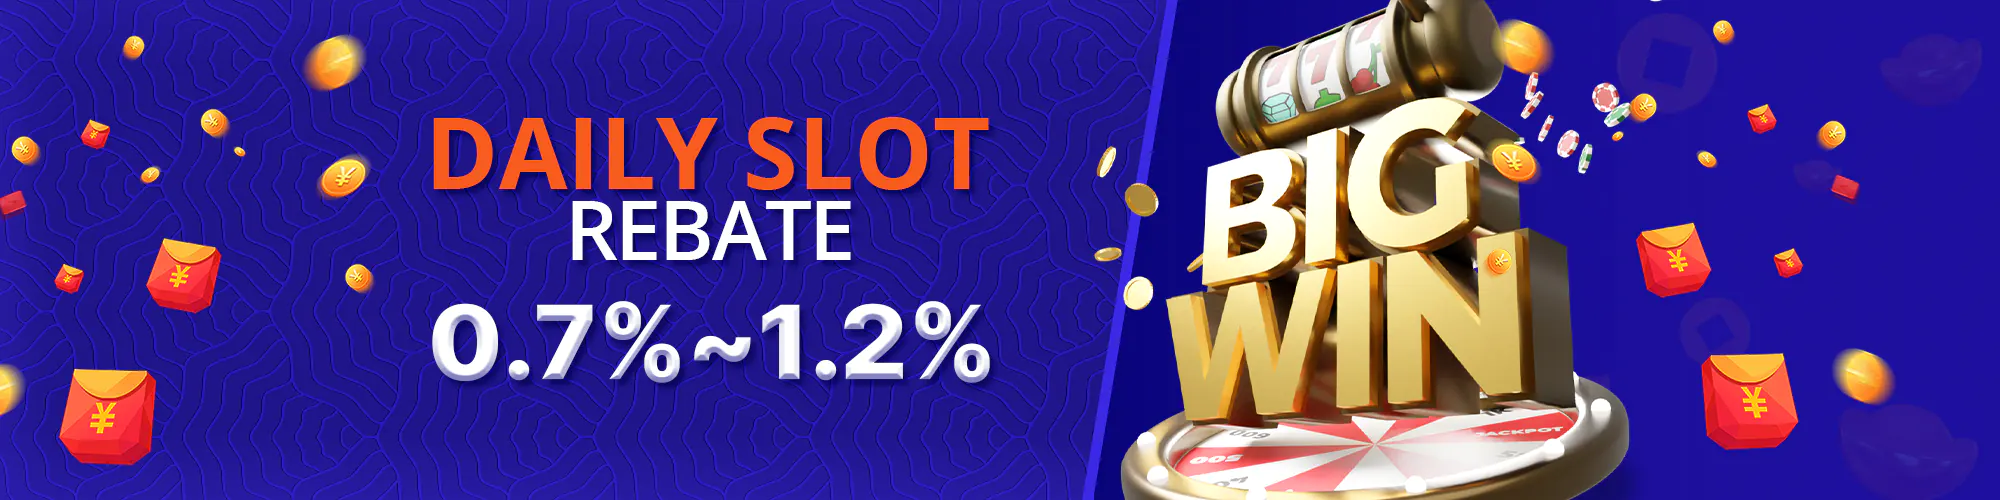 Slots Rebate 0.7%~1.2%